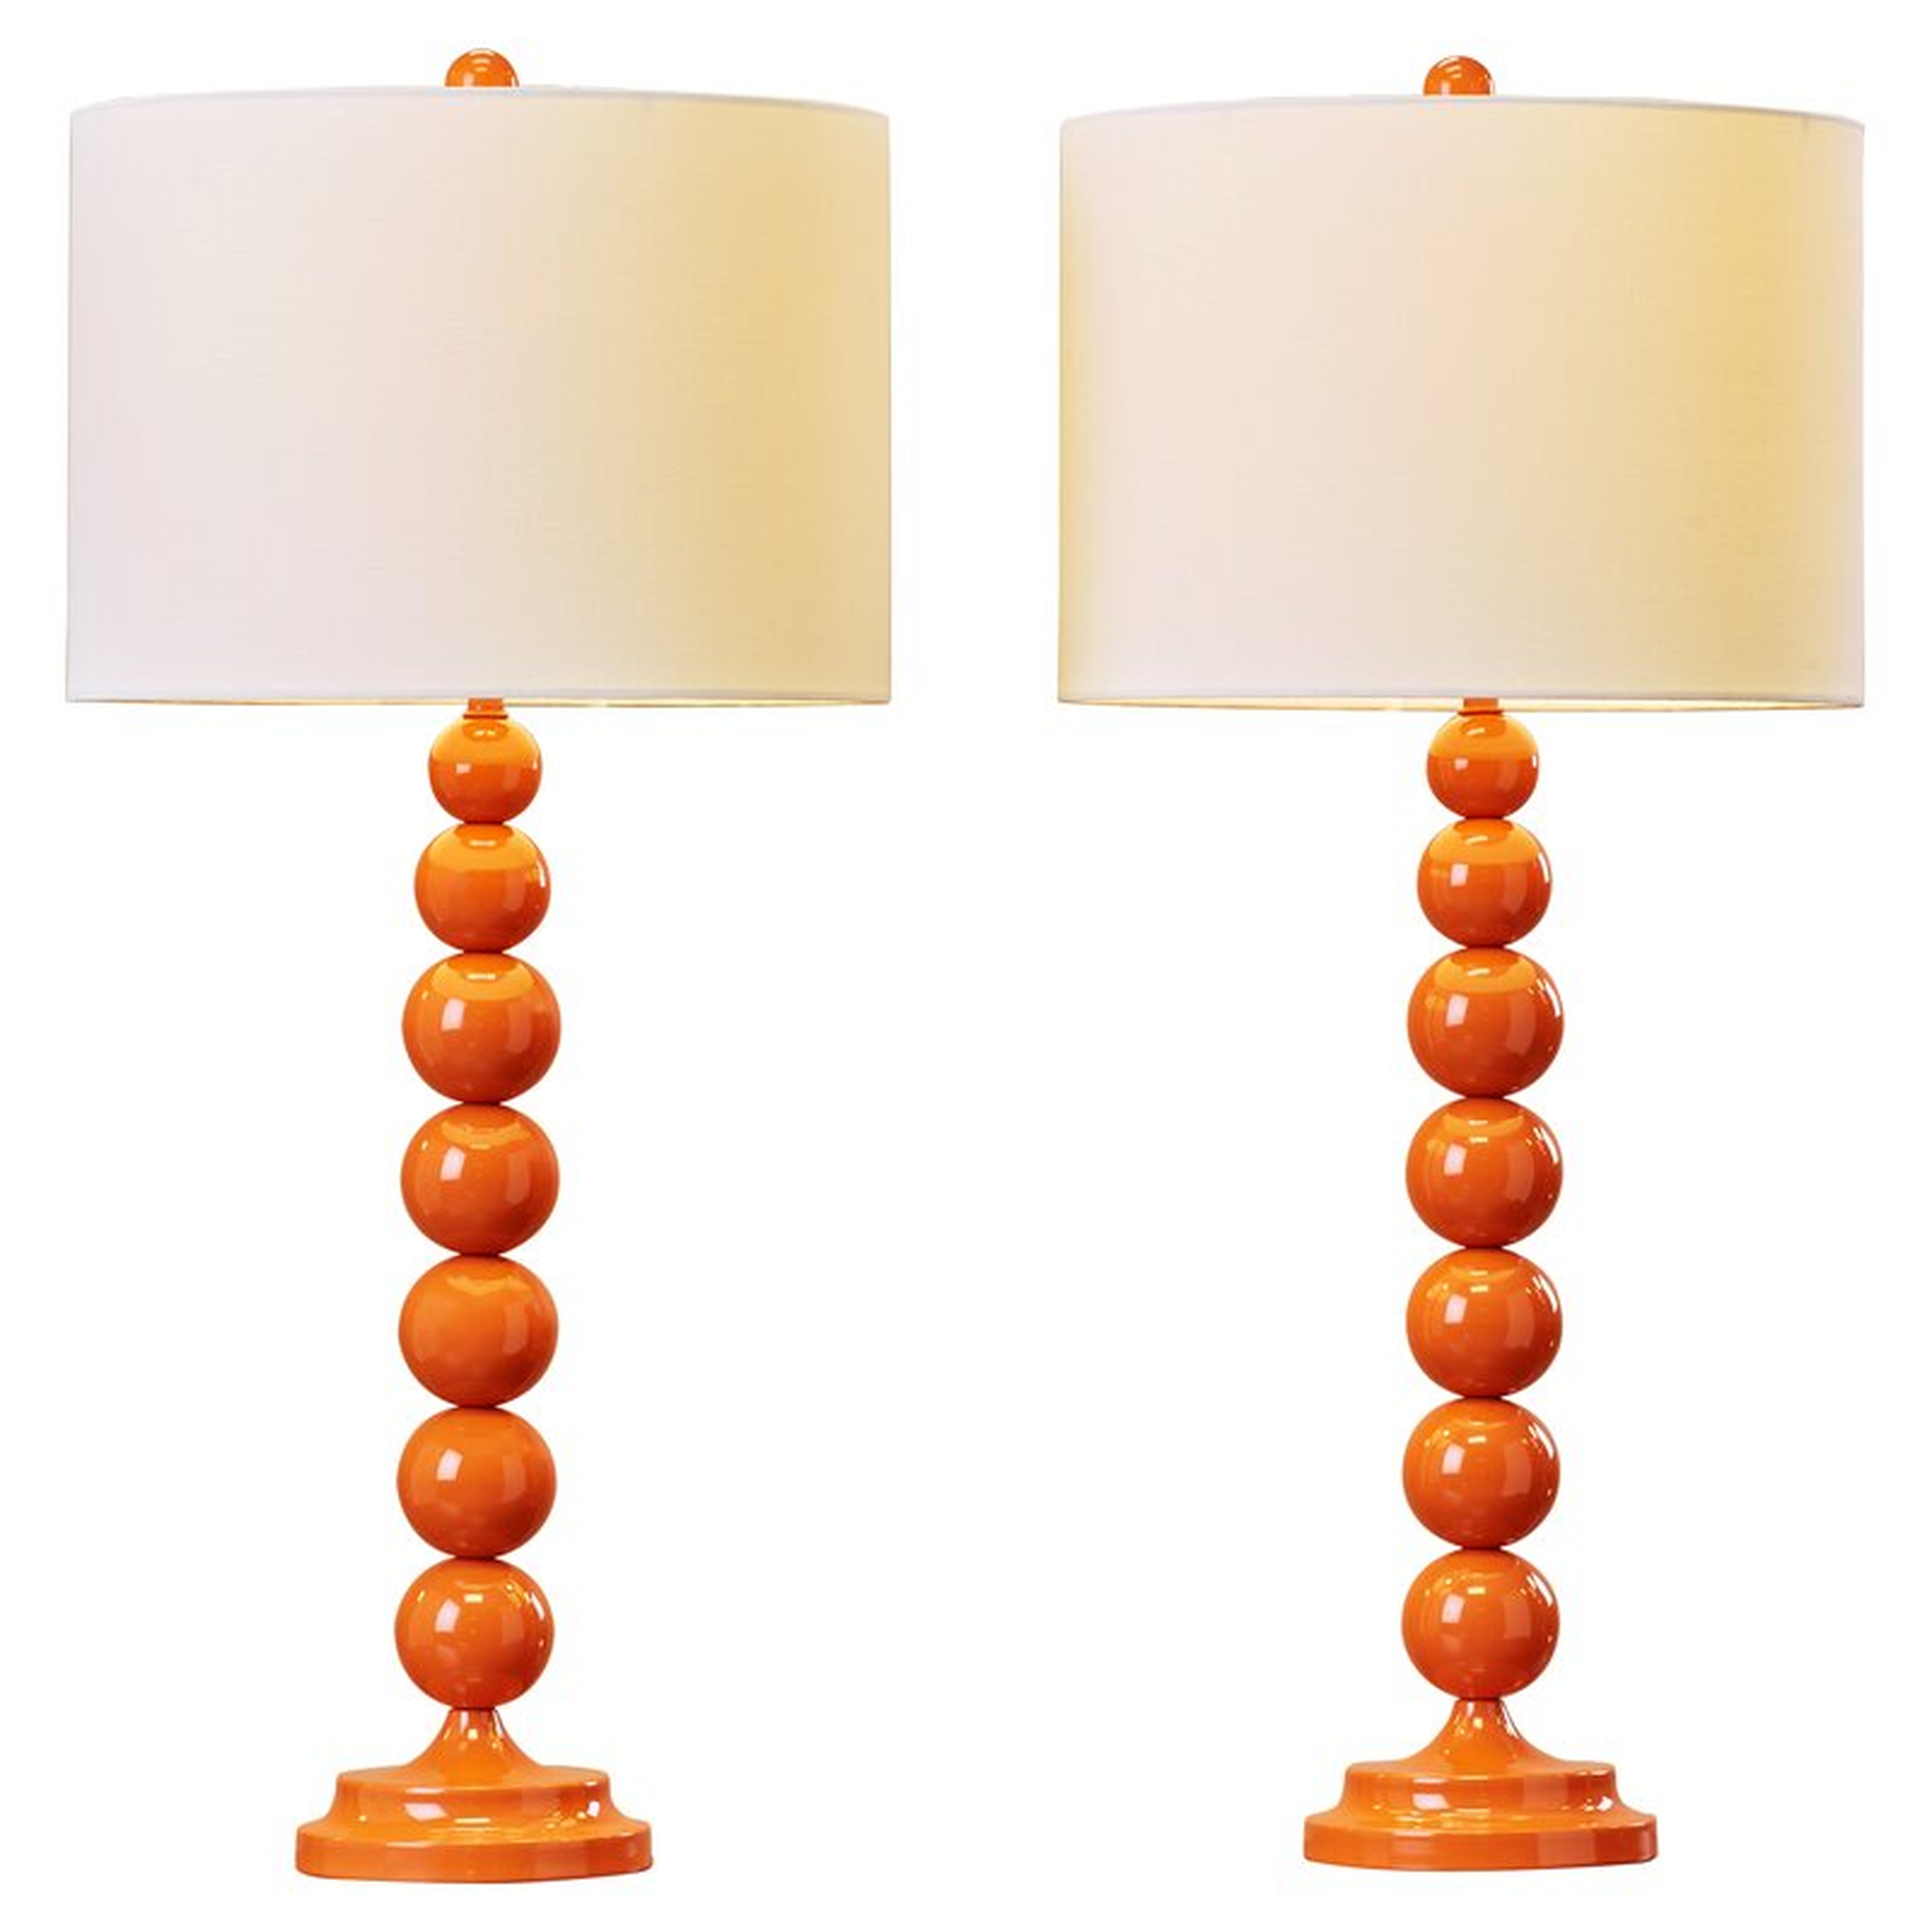 Gail Table Lamp - pair of lamps - Wayfair